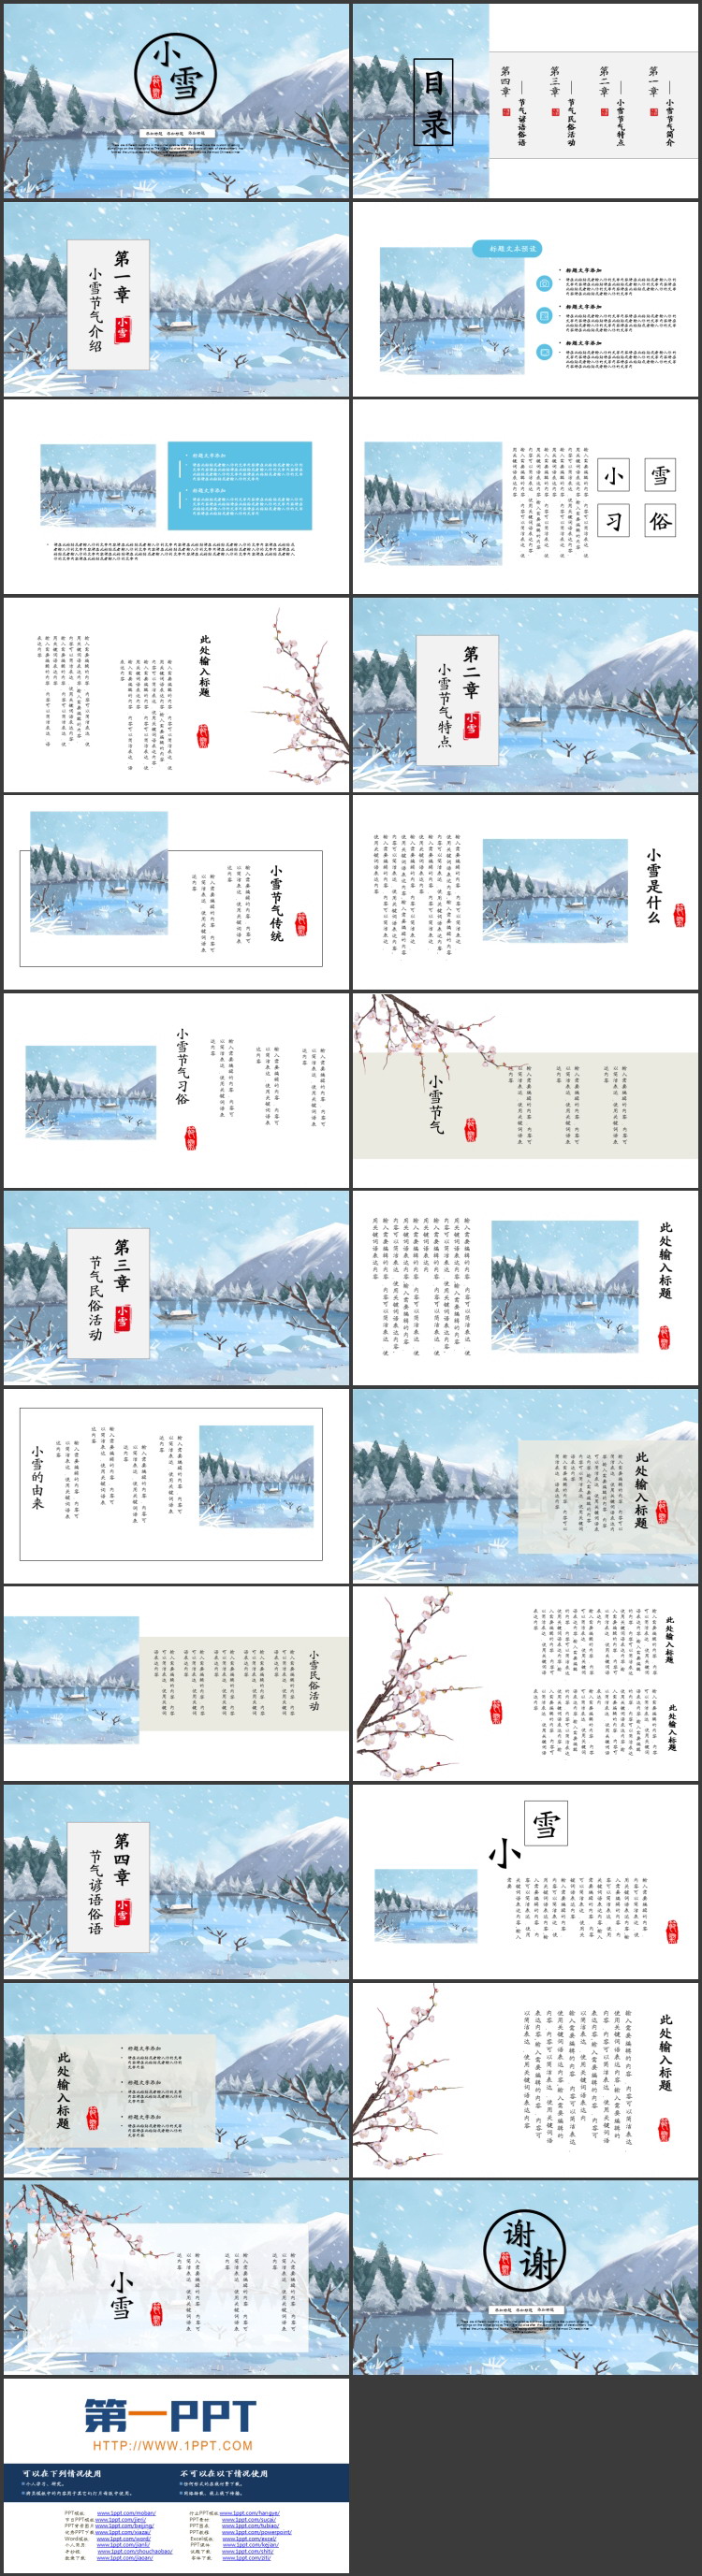 蓝色山川湖中小船雪景小雪节气介绍PPT模板